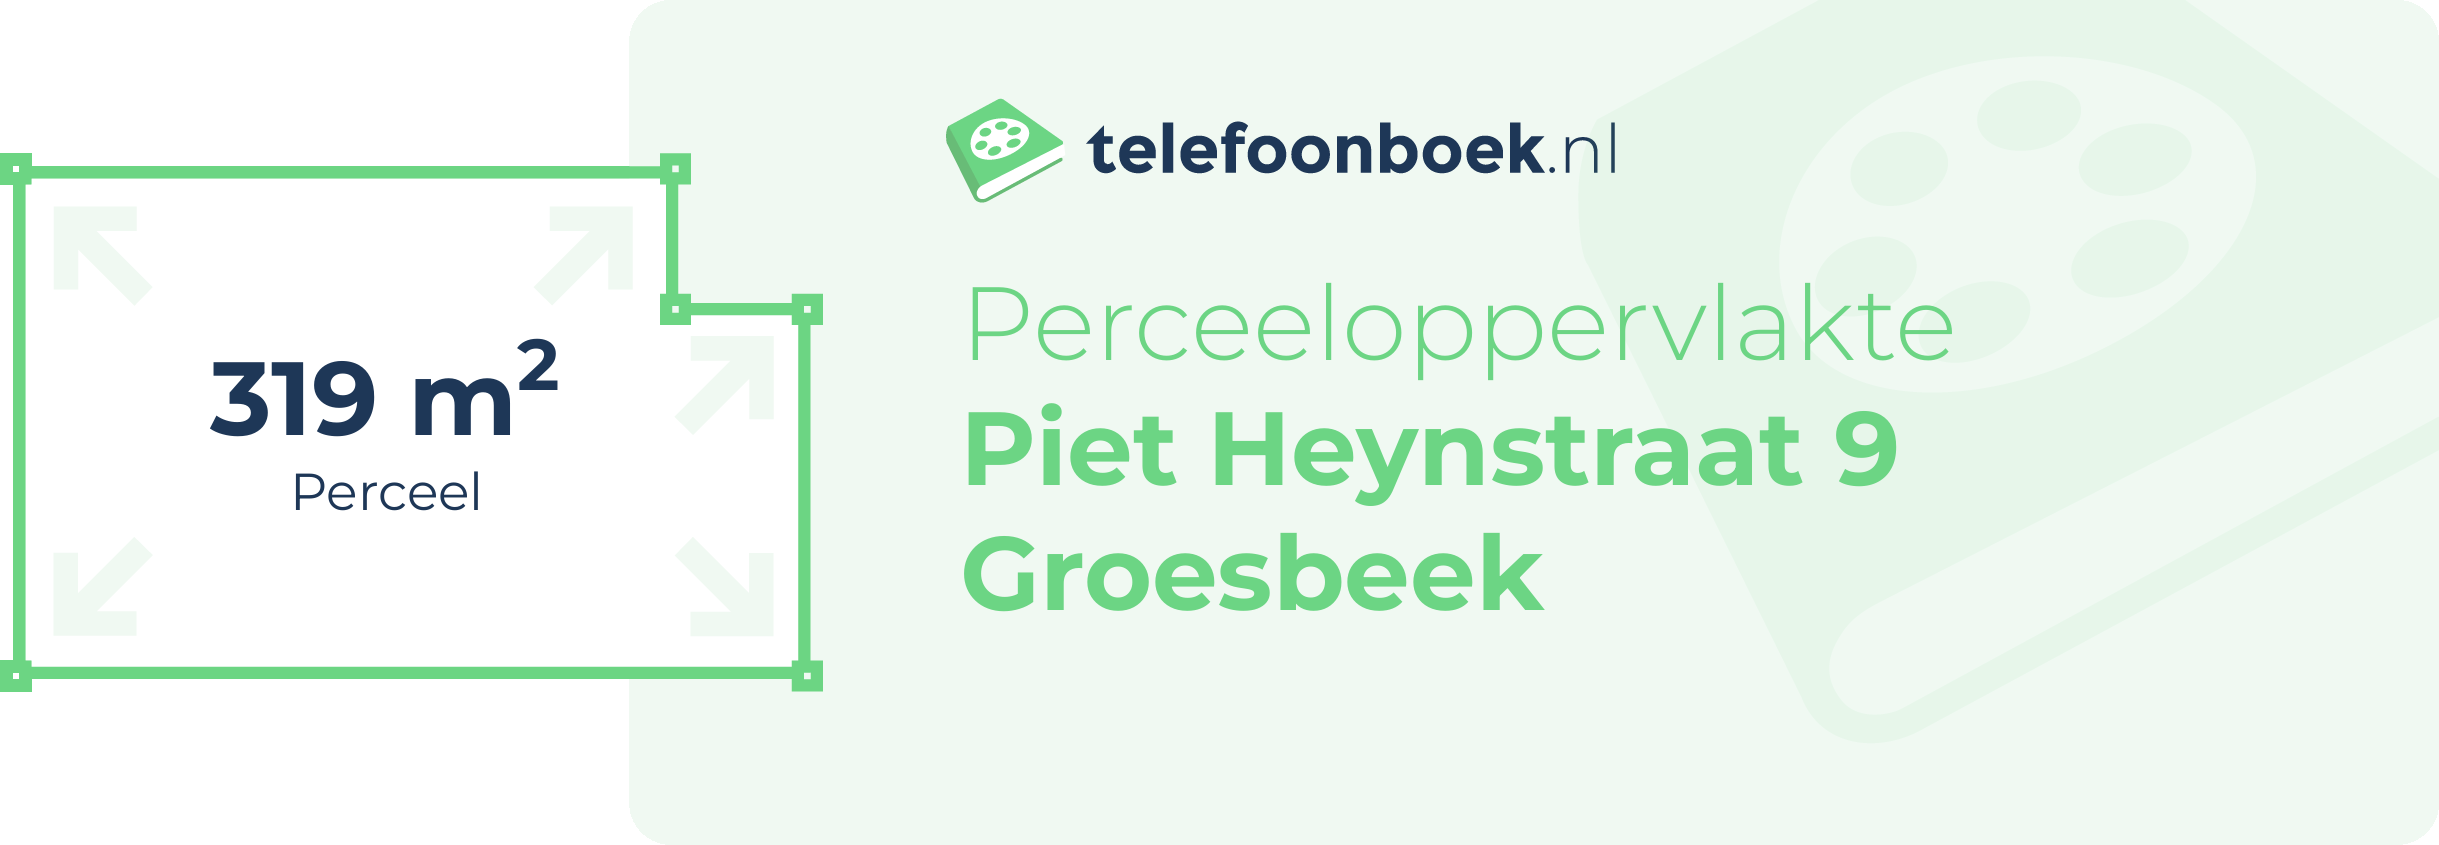 Perceeloppervlakte Piet Heynstraat 9 Groesbeek